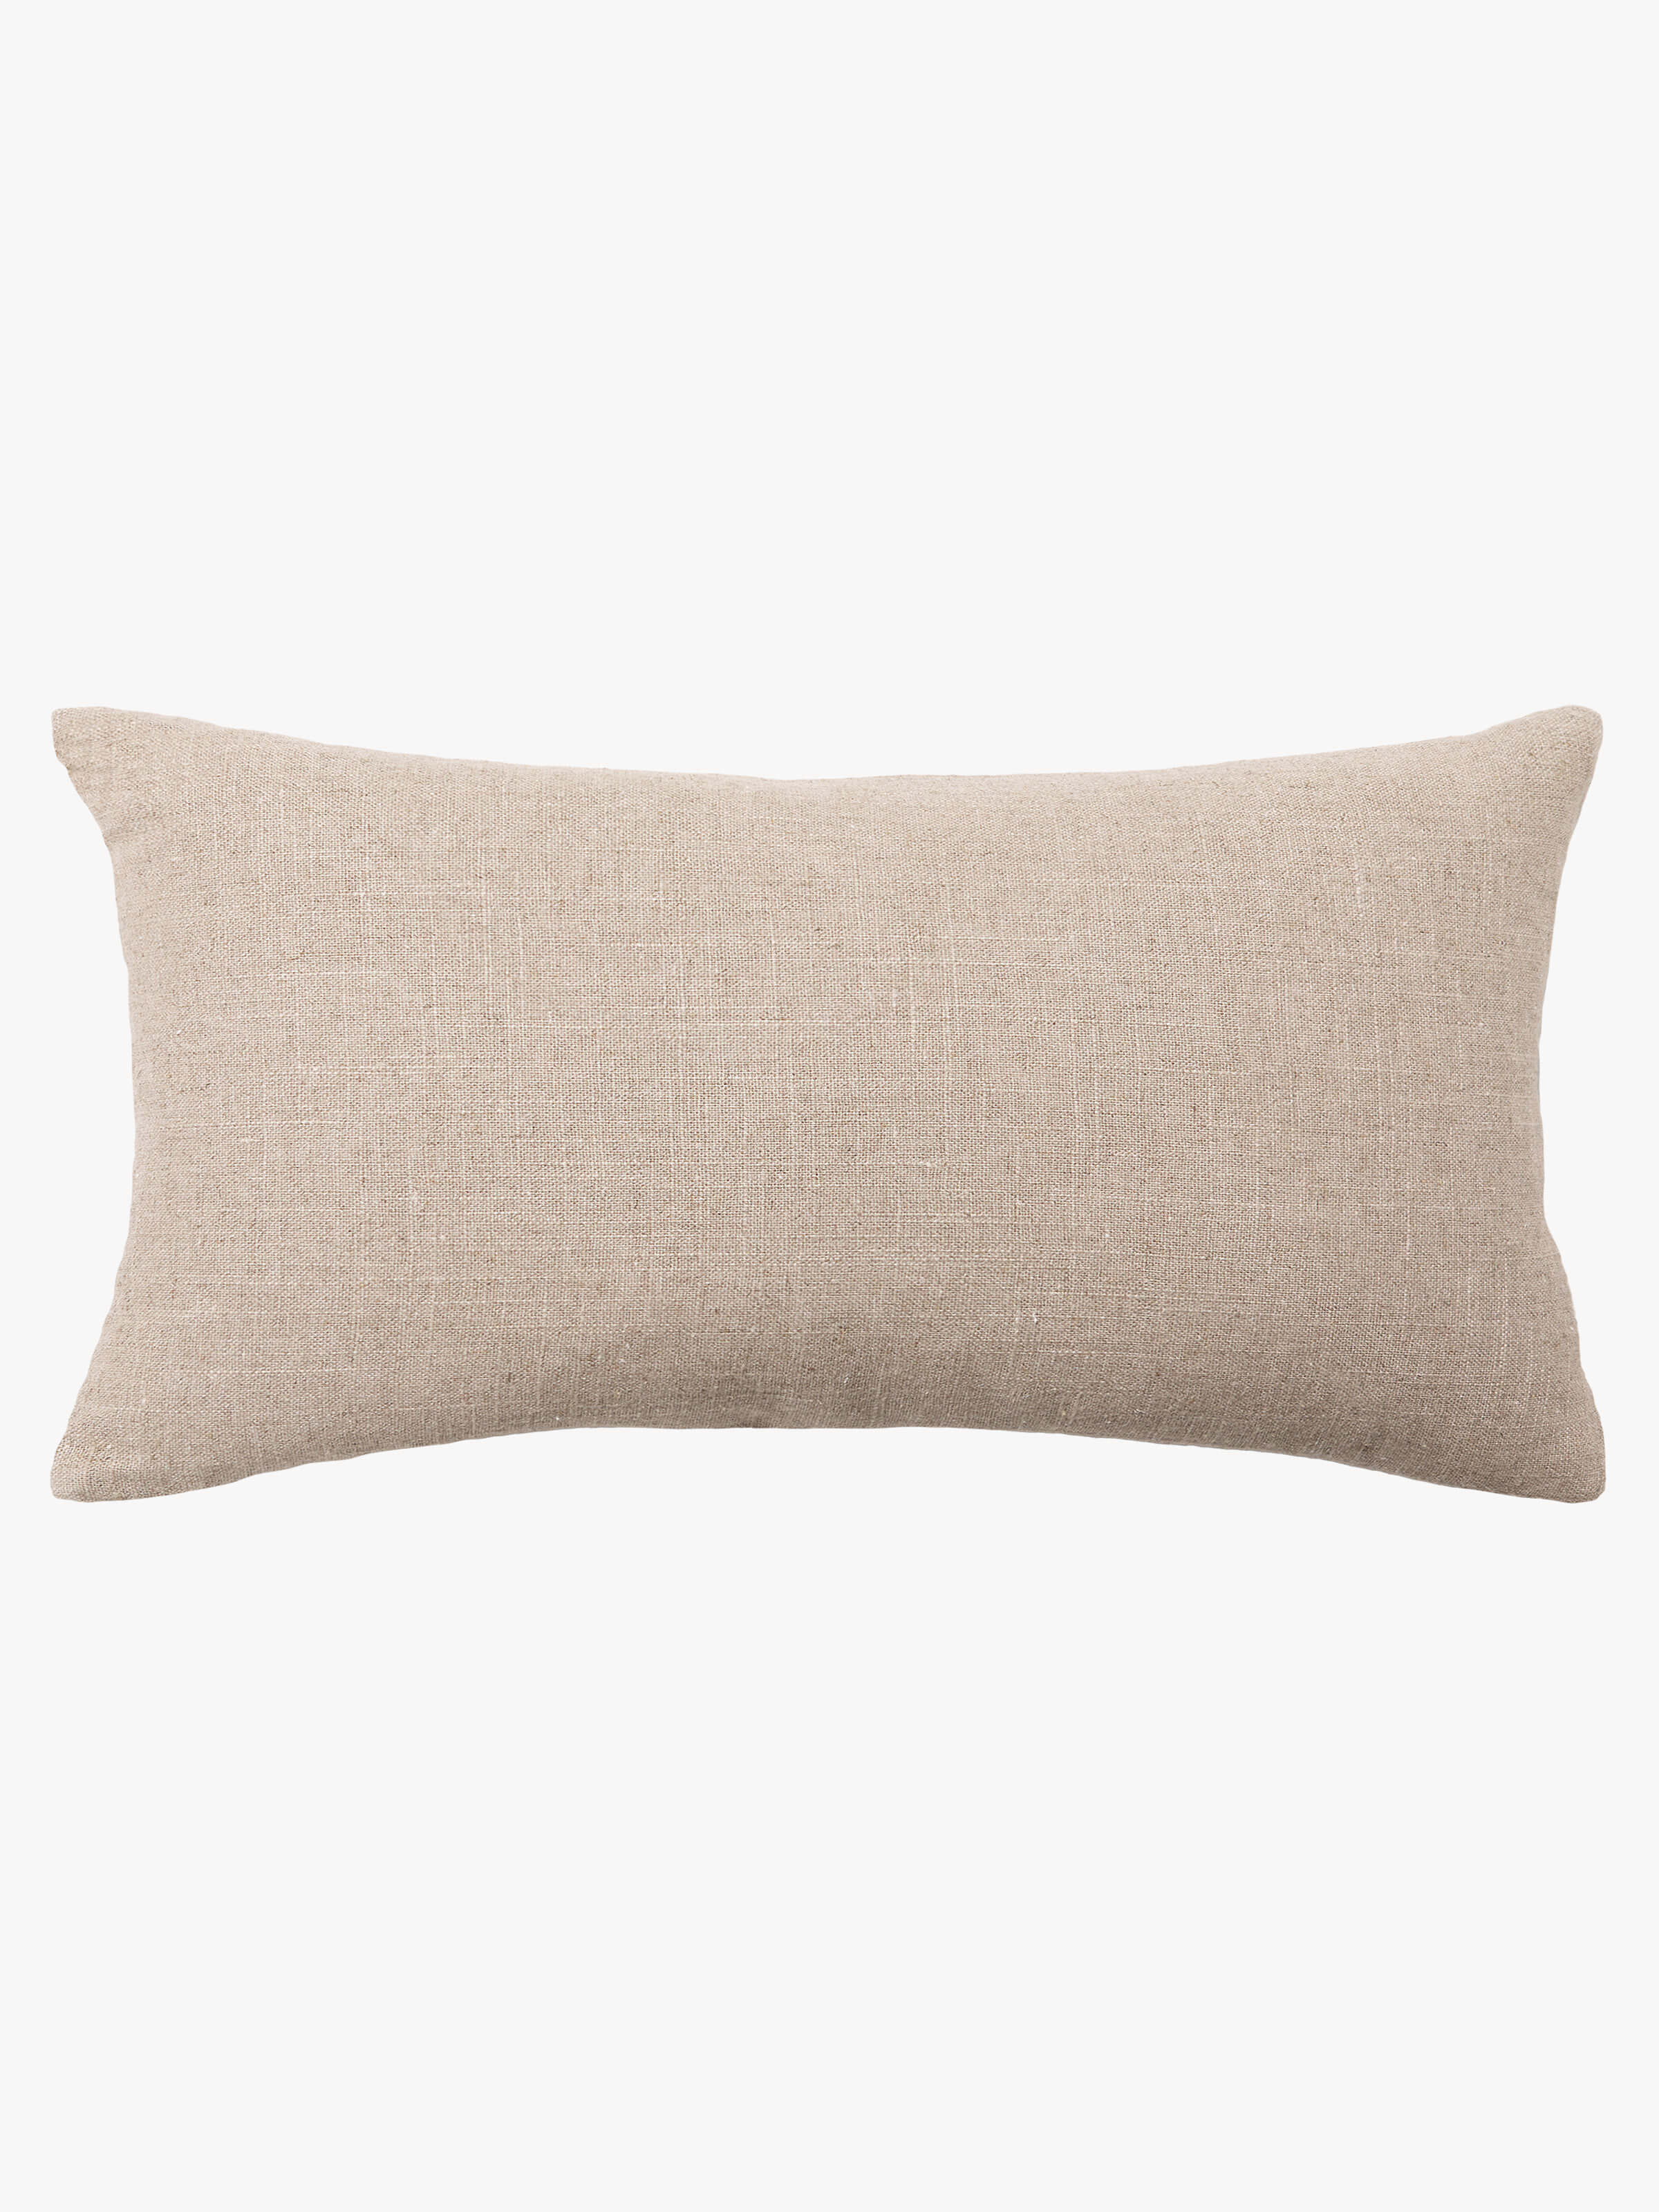 L&M Home: Buy Luxury Velvet Cushions Online - Etro